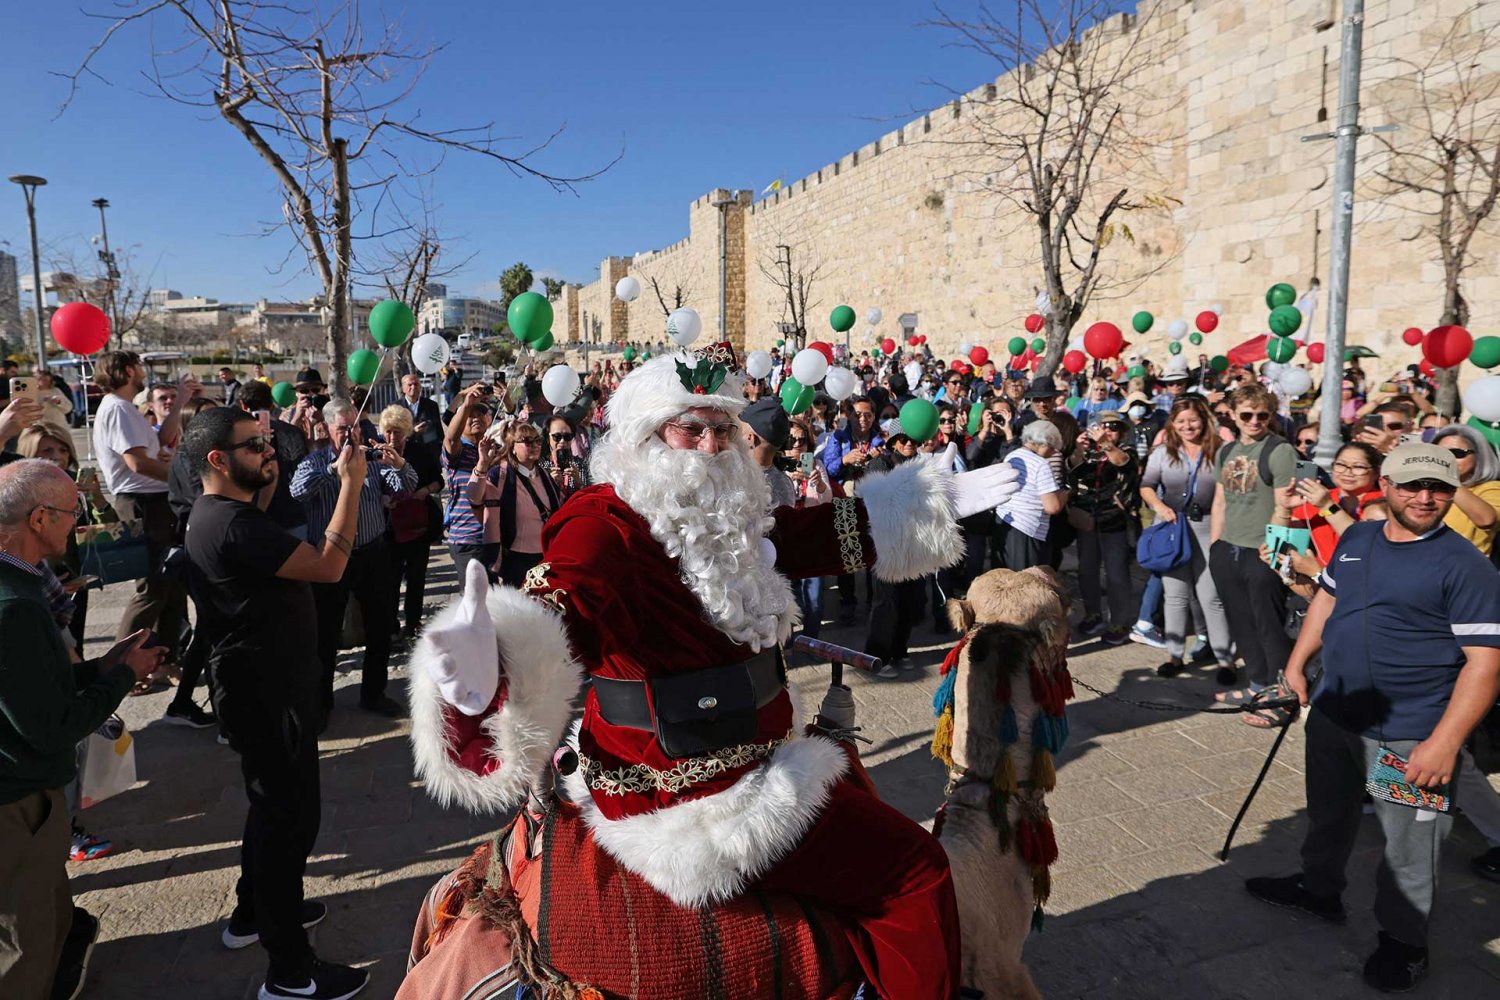 Jerusalem’s Santa Claus sits on a camel by the wall surrounding Jerusalem's Old City